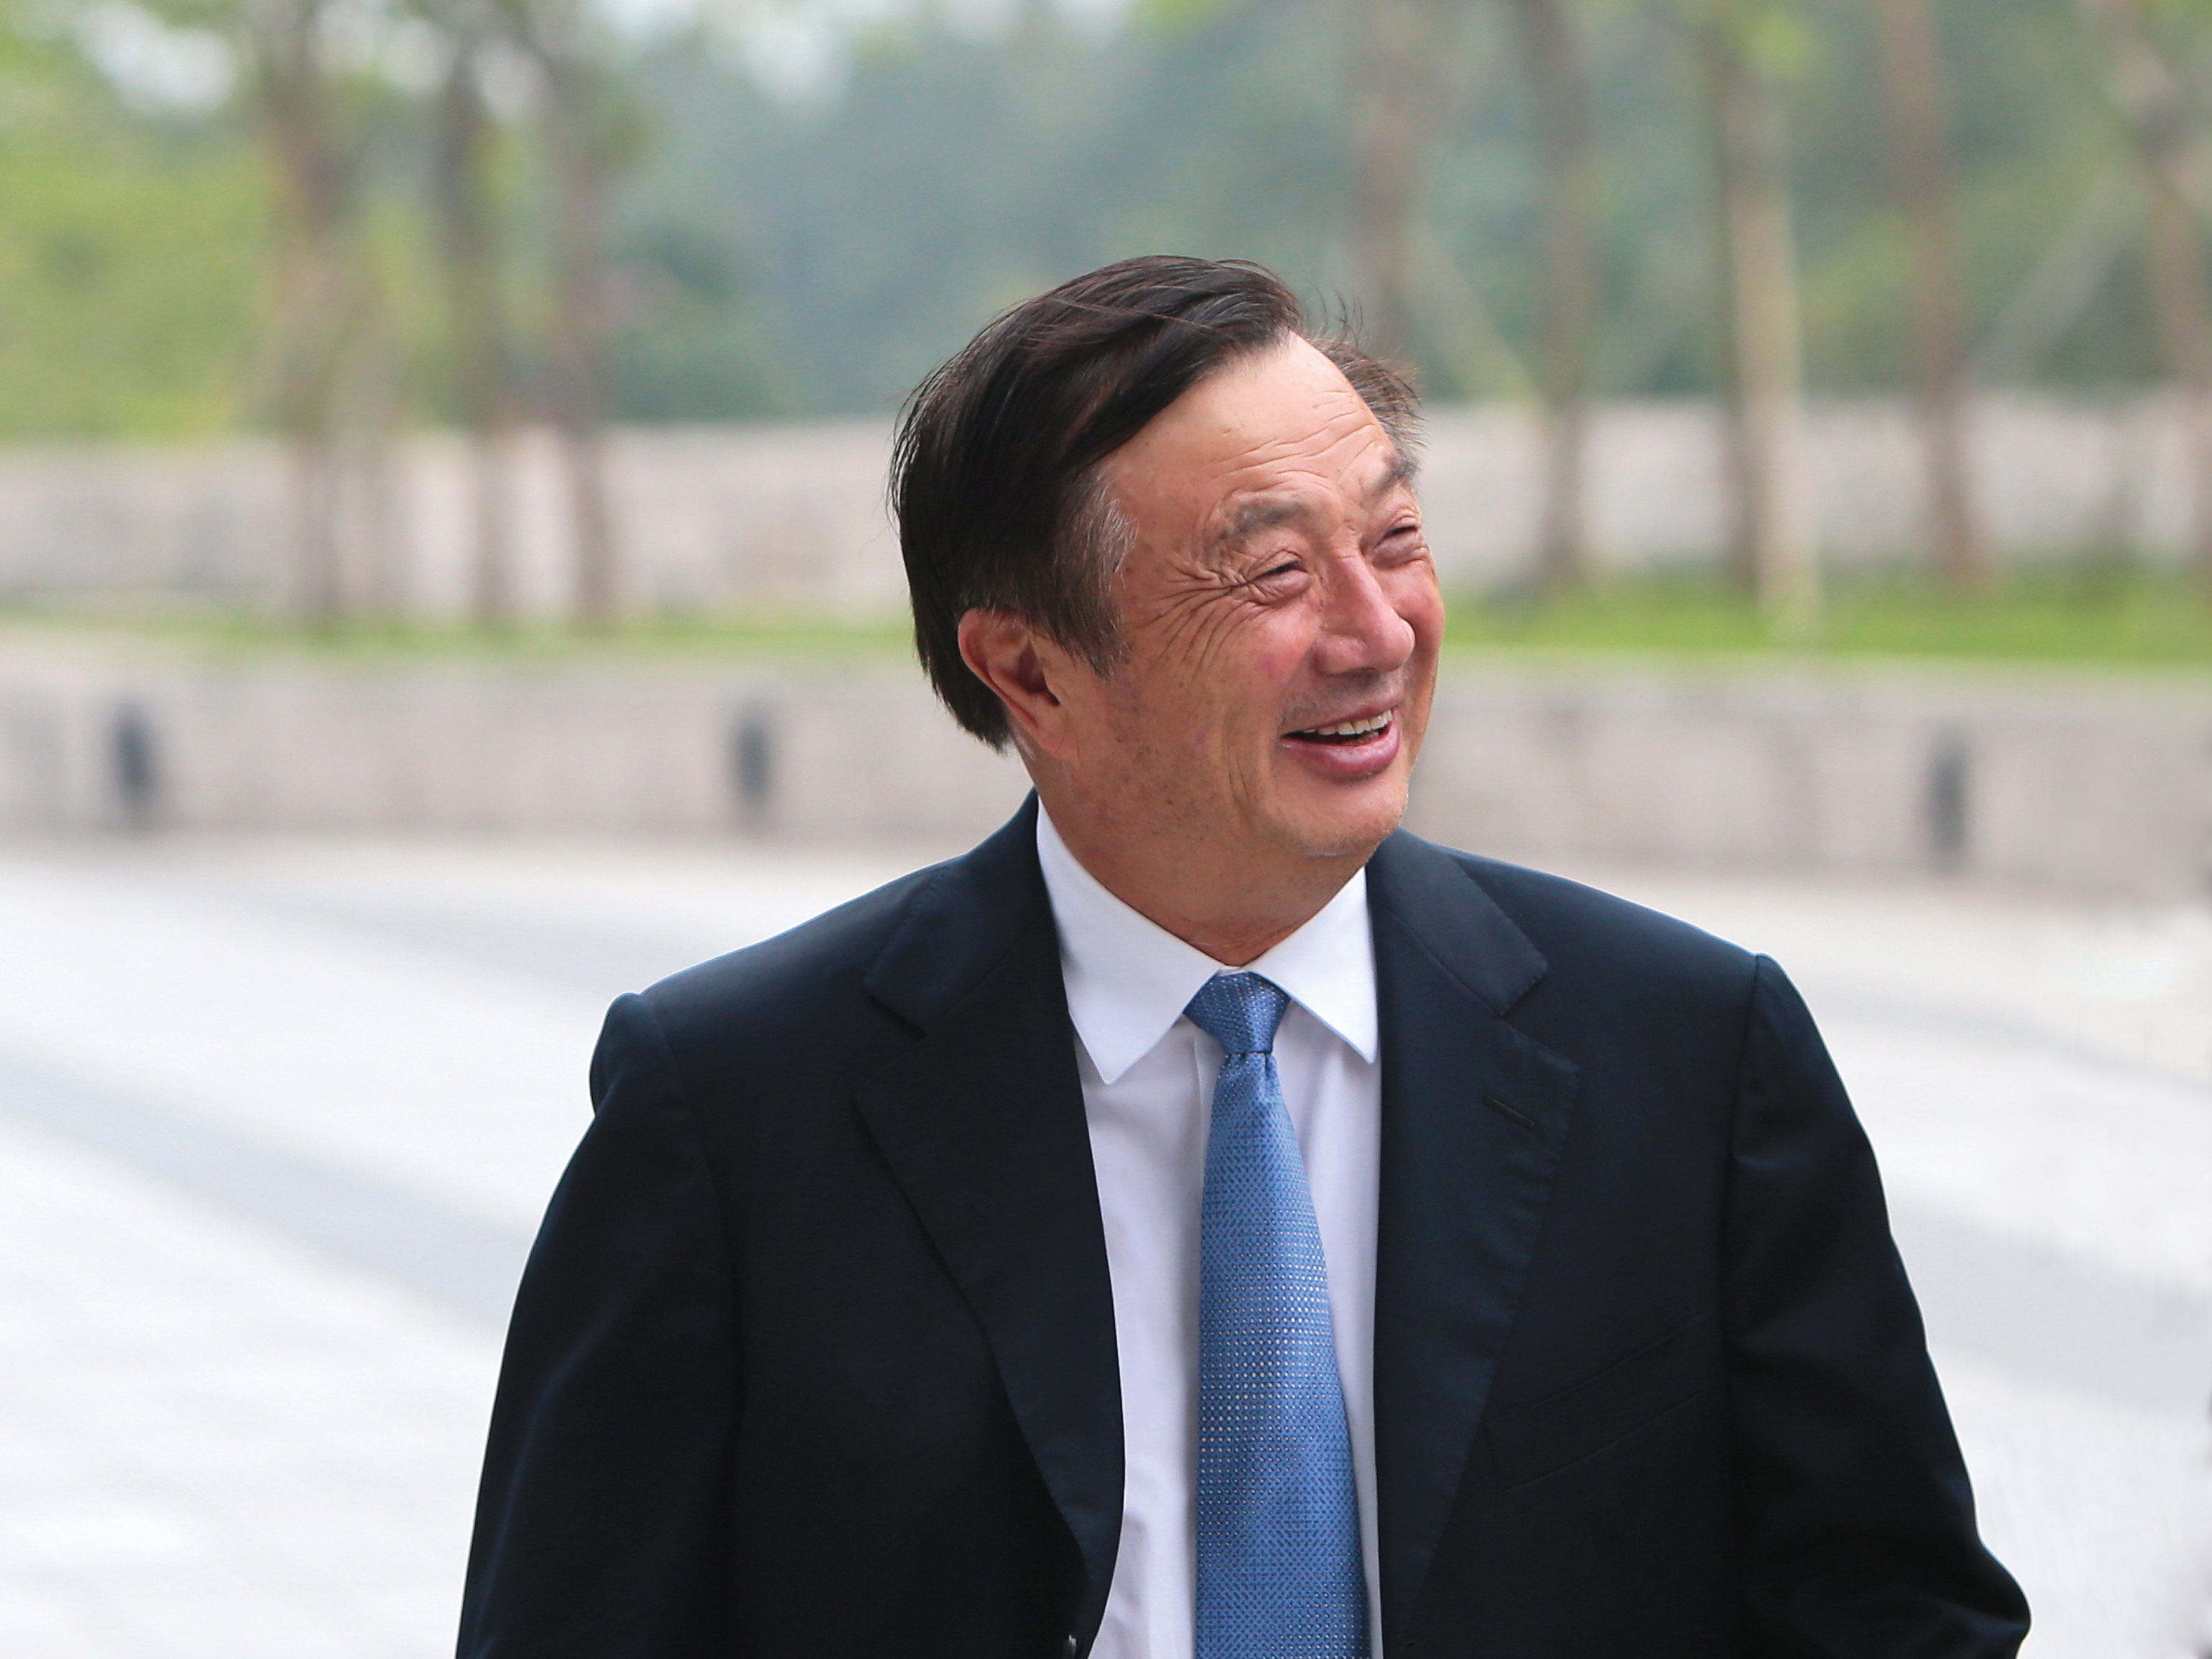 Mr. Ren Zhengfei 